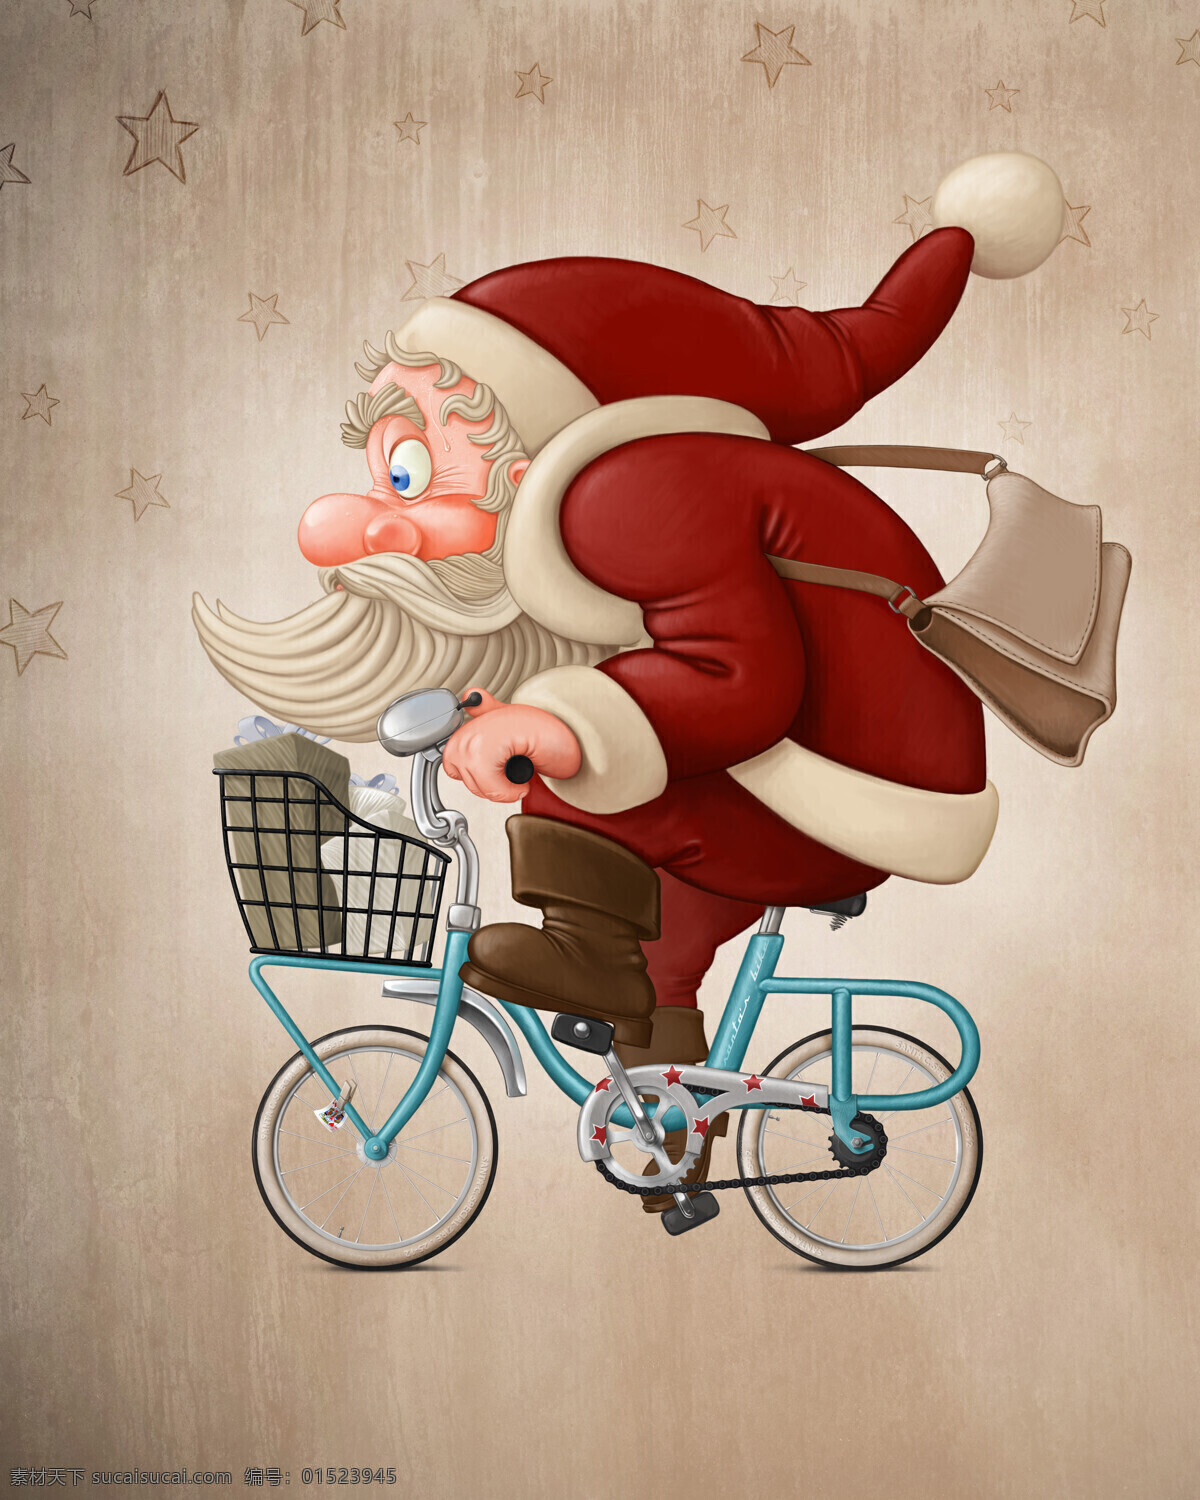 骑 自行车 圣诞老人 卡通画 骑自行车 圣诞节 节日 节日庆典 生活百科